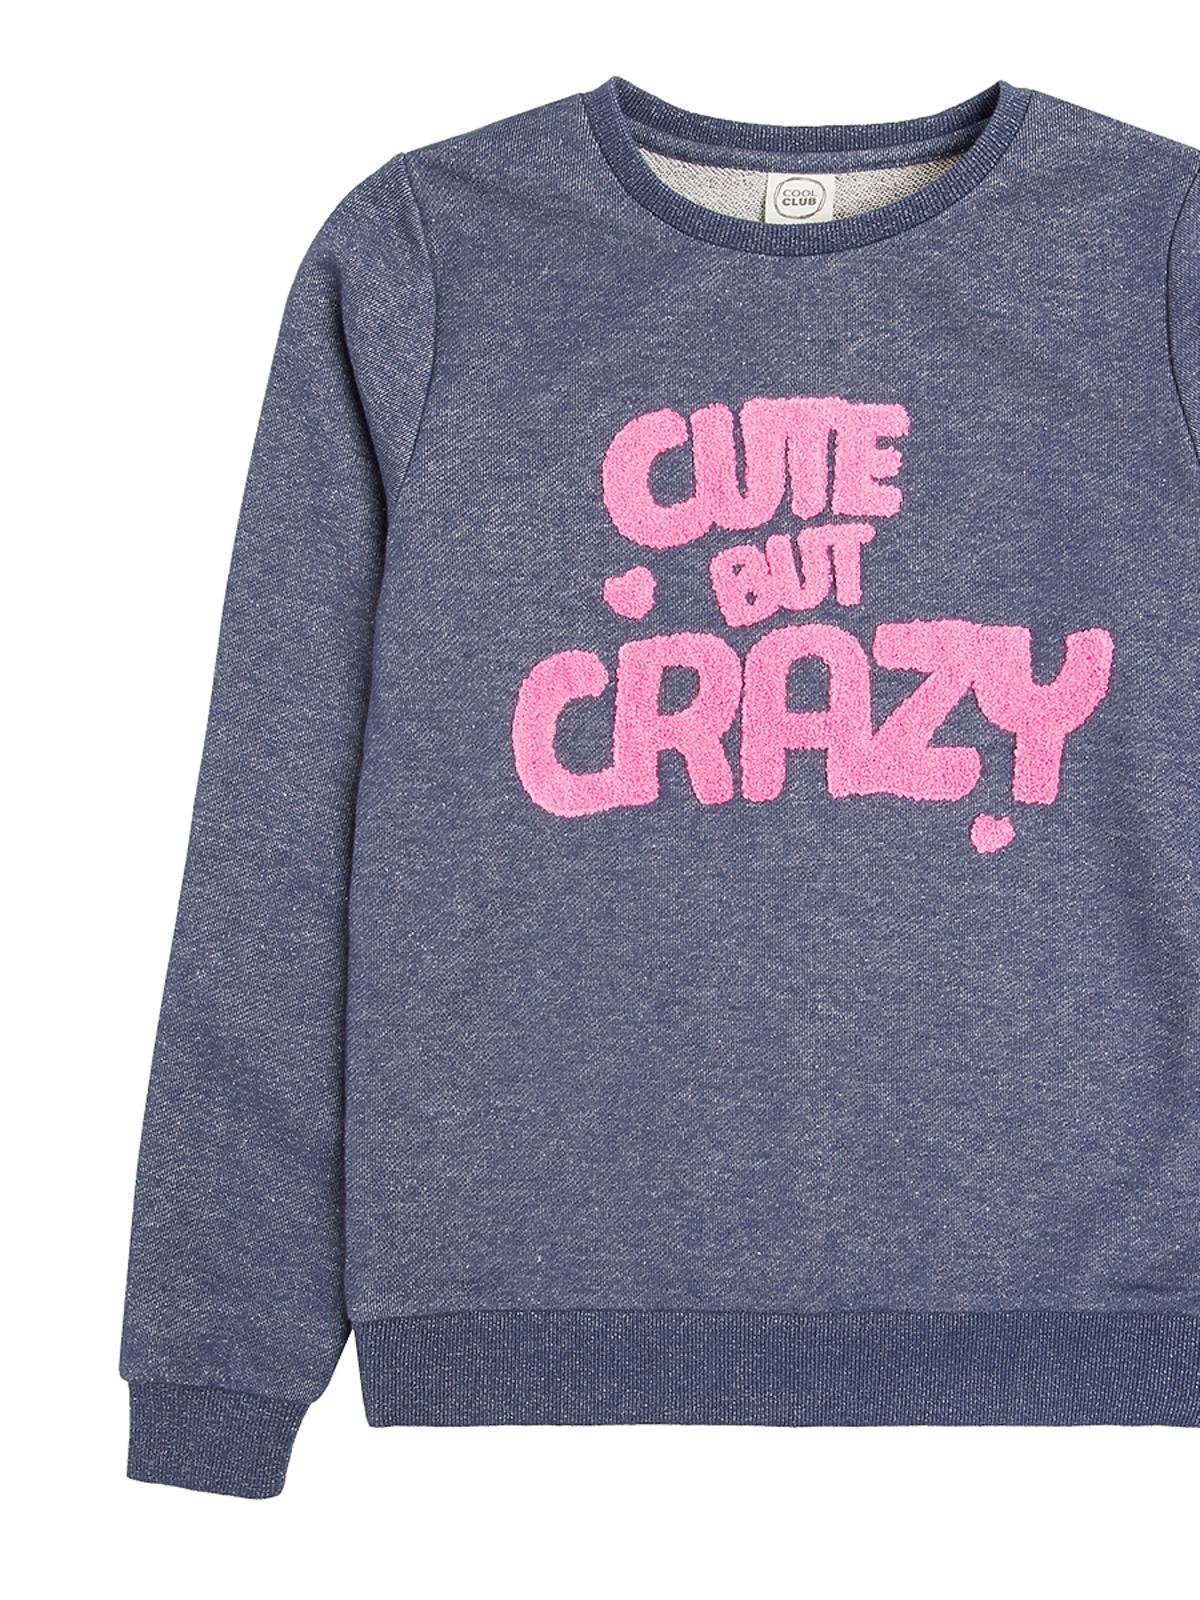 bluza dla dziewczynki z różowym napisem Cool Club